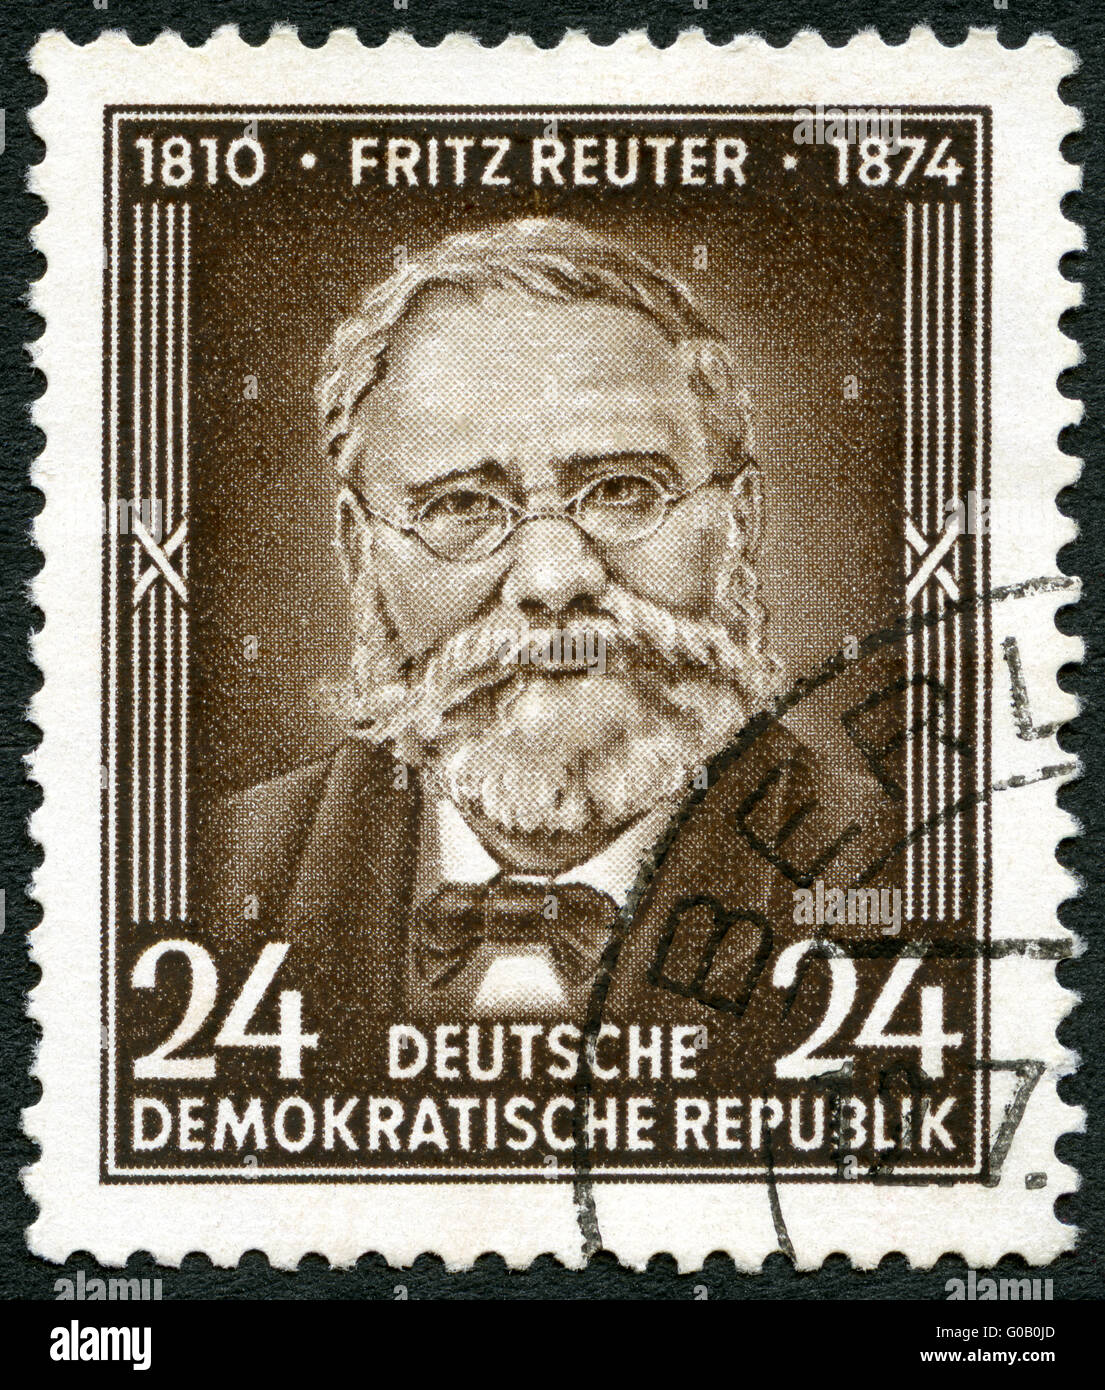 Allemagne - 1954 : Fritz Reuter montre (1810-1874), écrivain, 80e anniversaire de la mort Banque D'Images